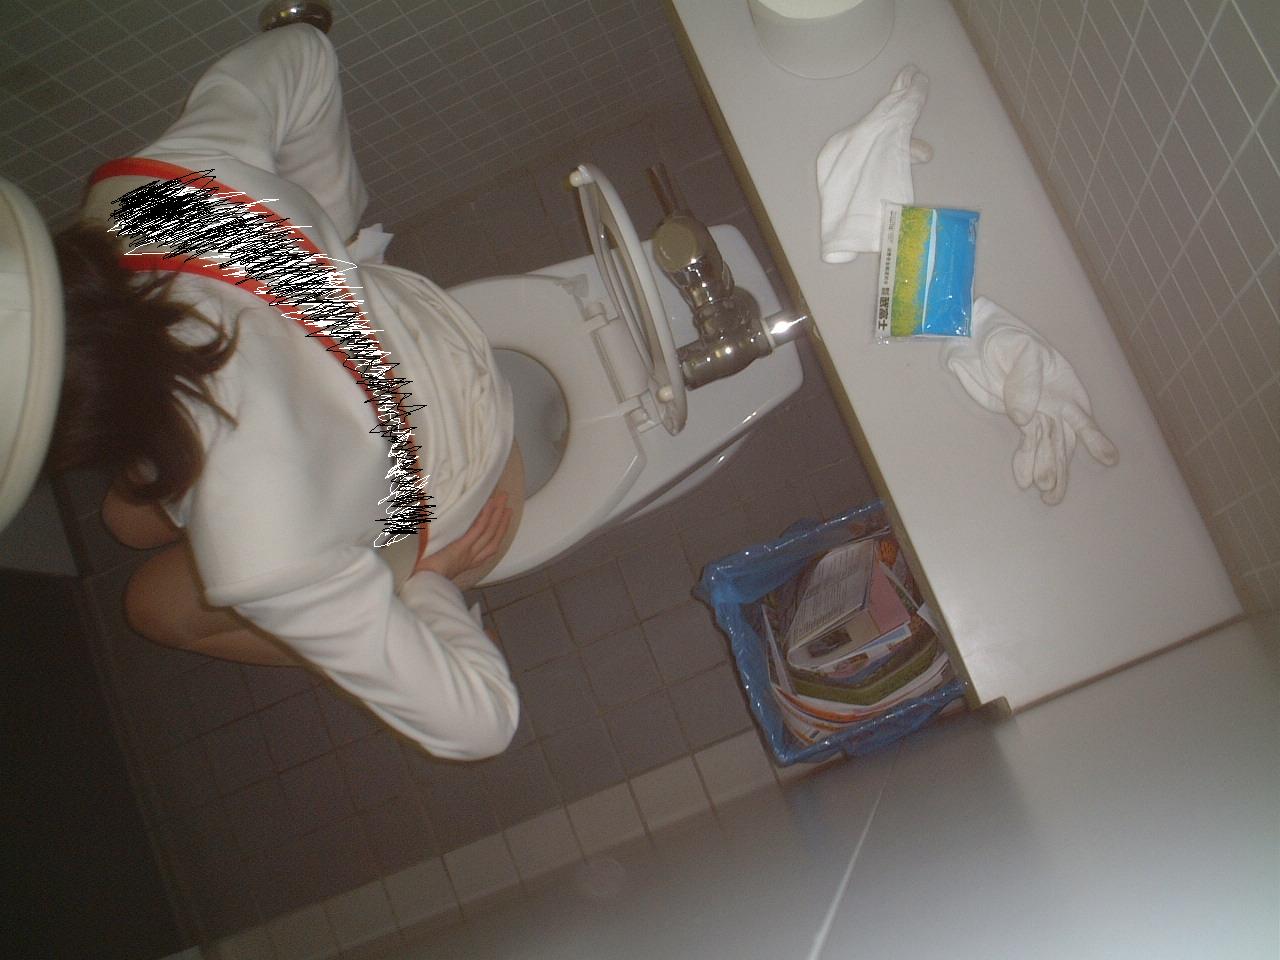 【トイレ盗撮画像】女性にとって最大の恥辱…排泄行為を覗かれるトイレ盗撮画像 その11